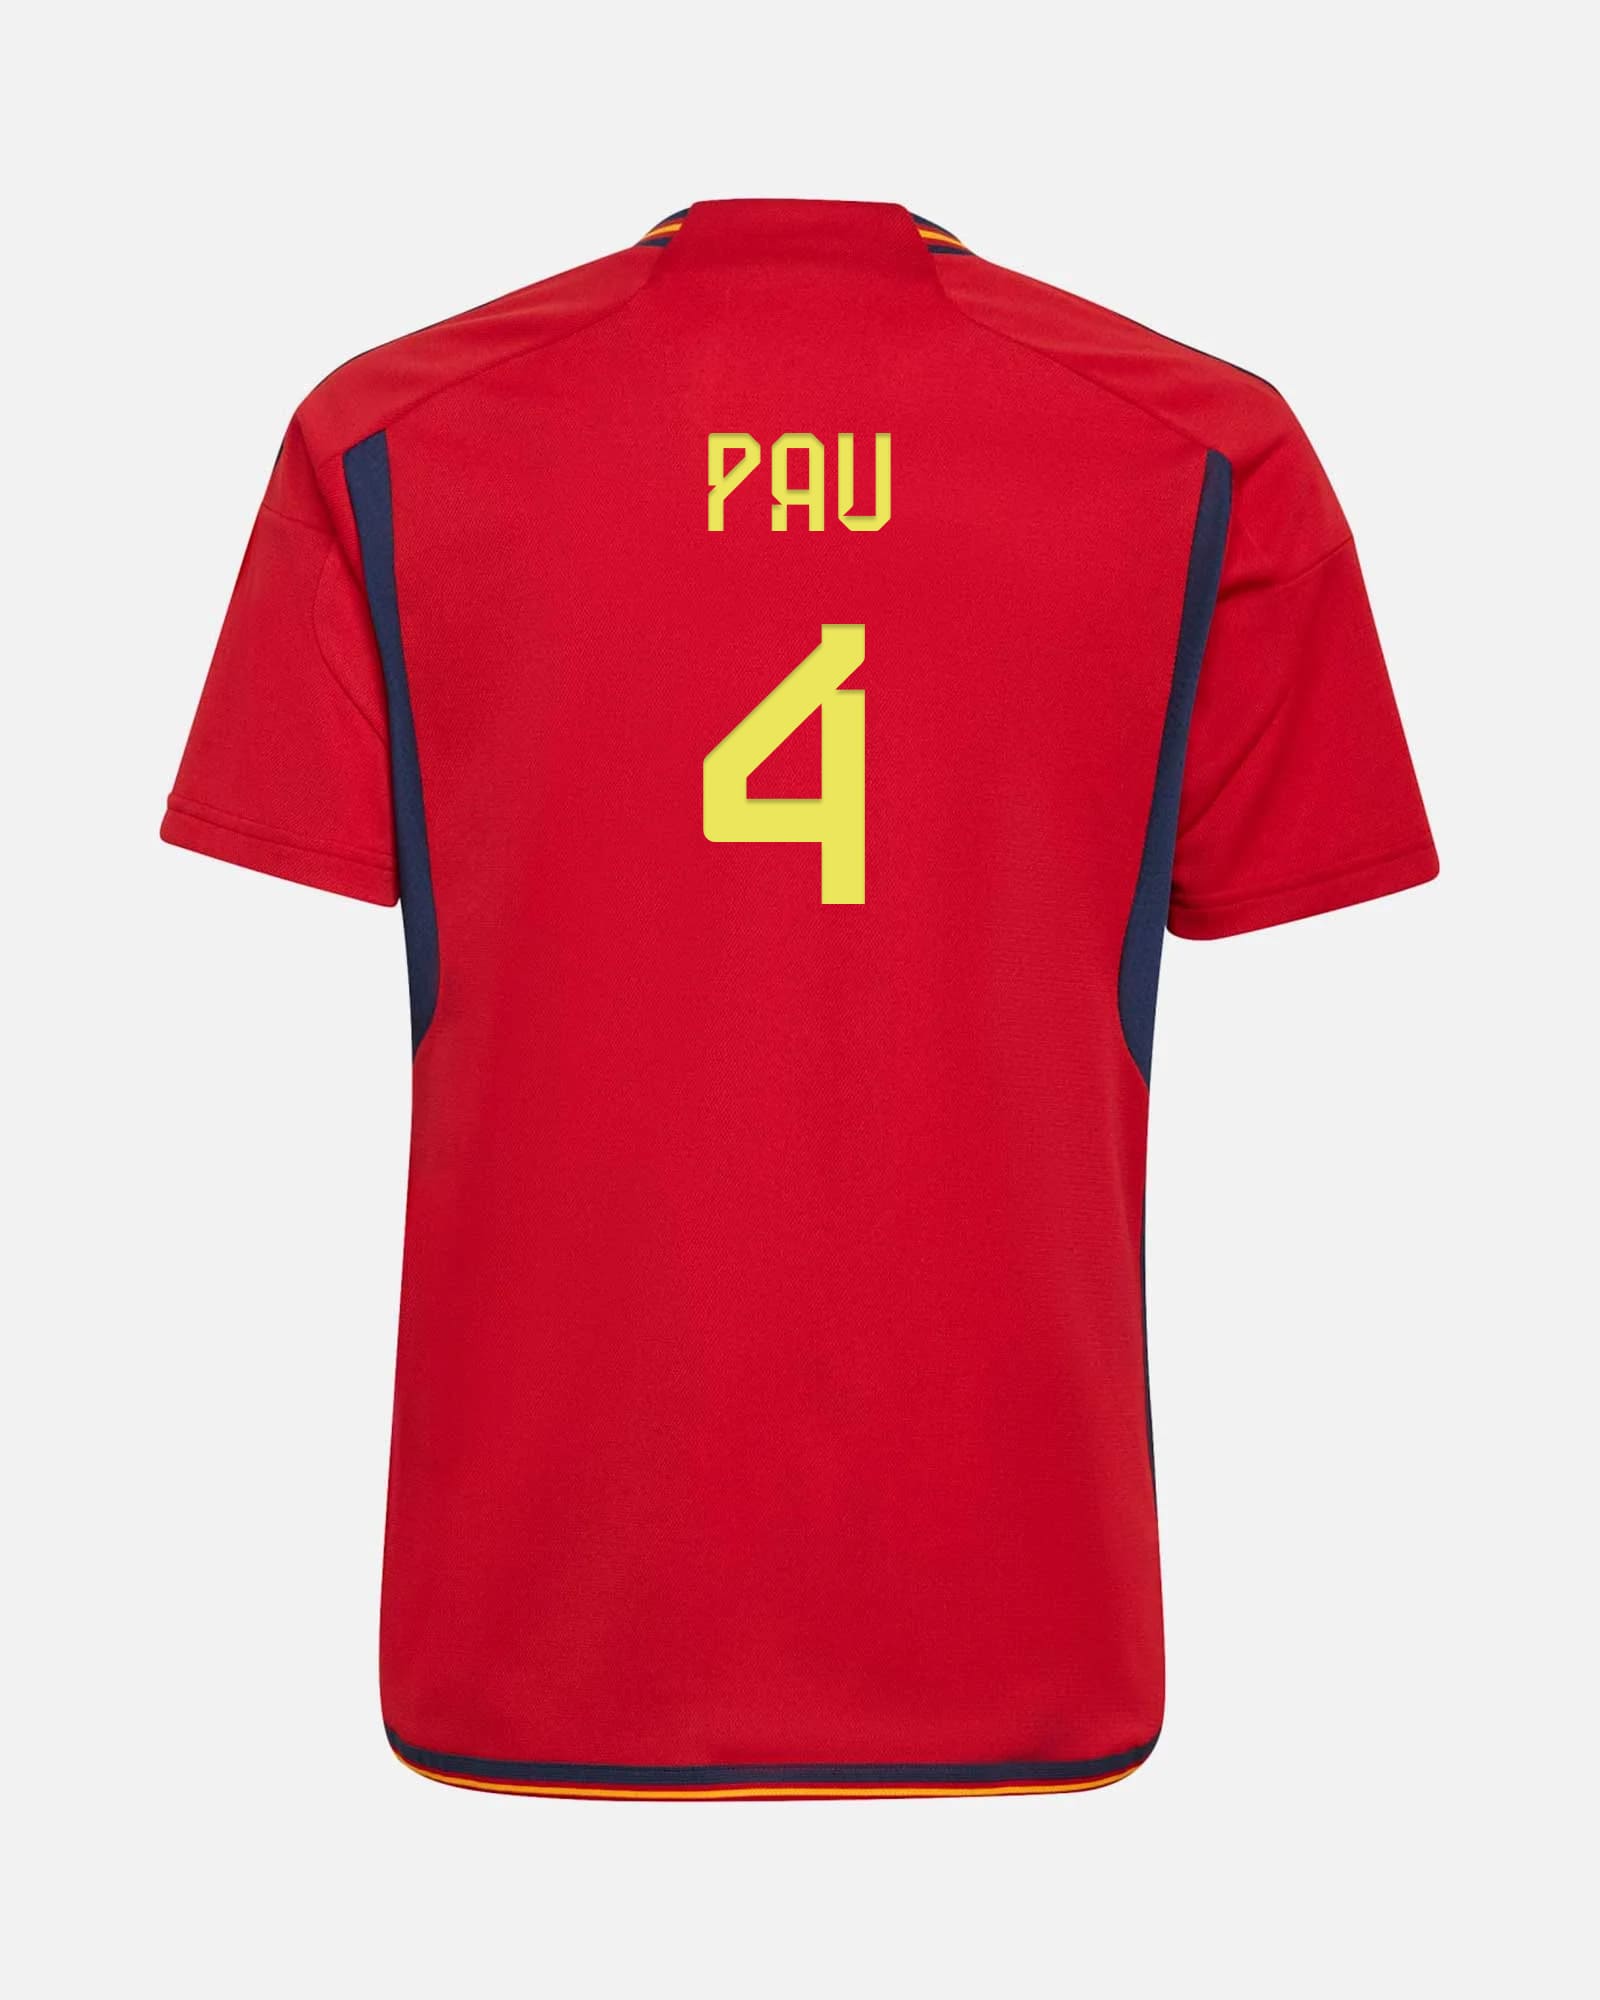 Camiseta de fútbol España Koke 6 Niños 1ª equipación Euro 2020